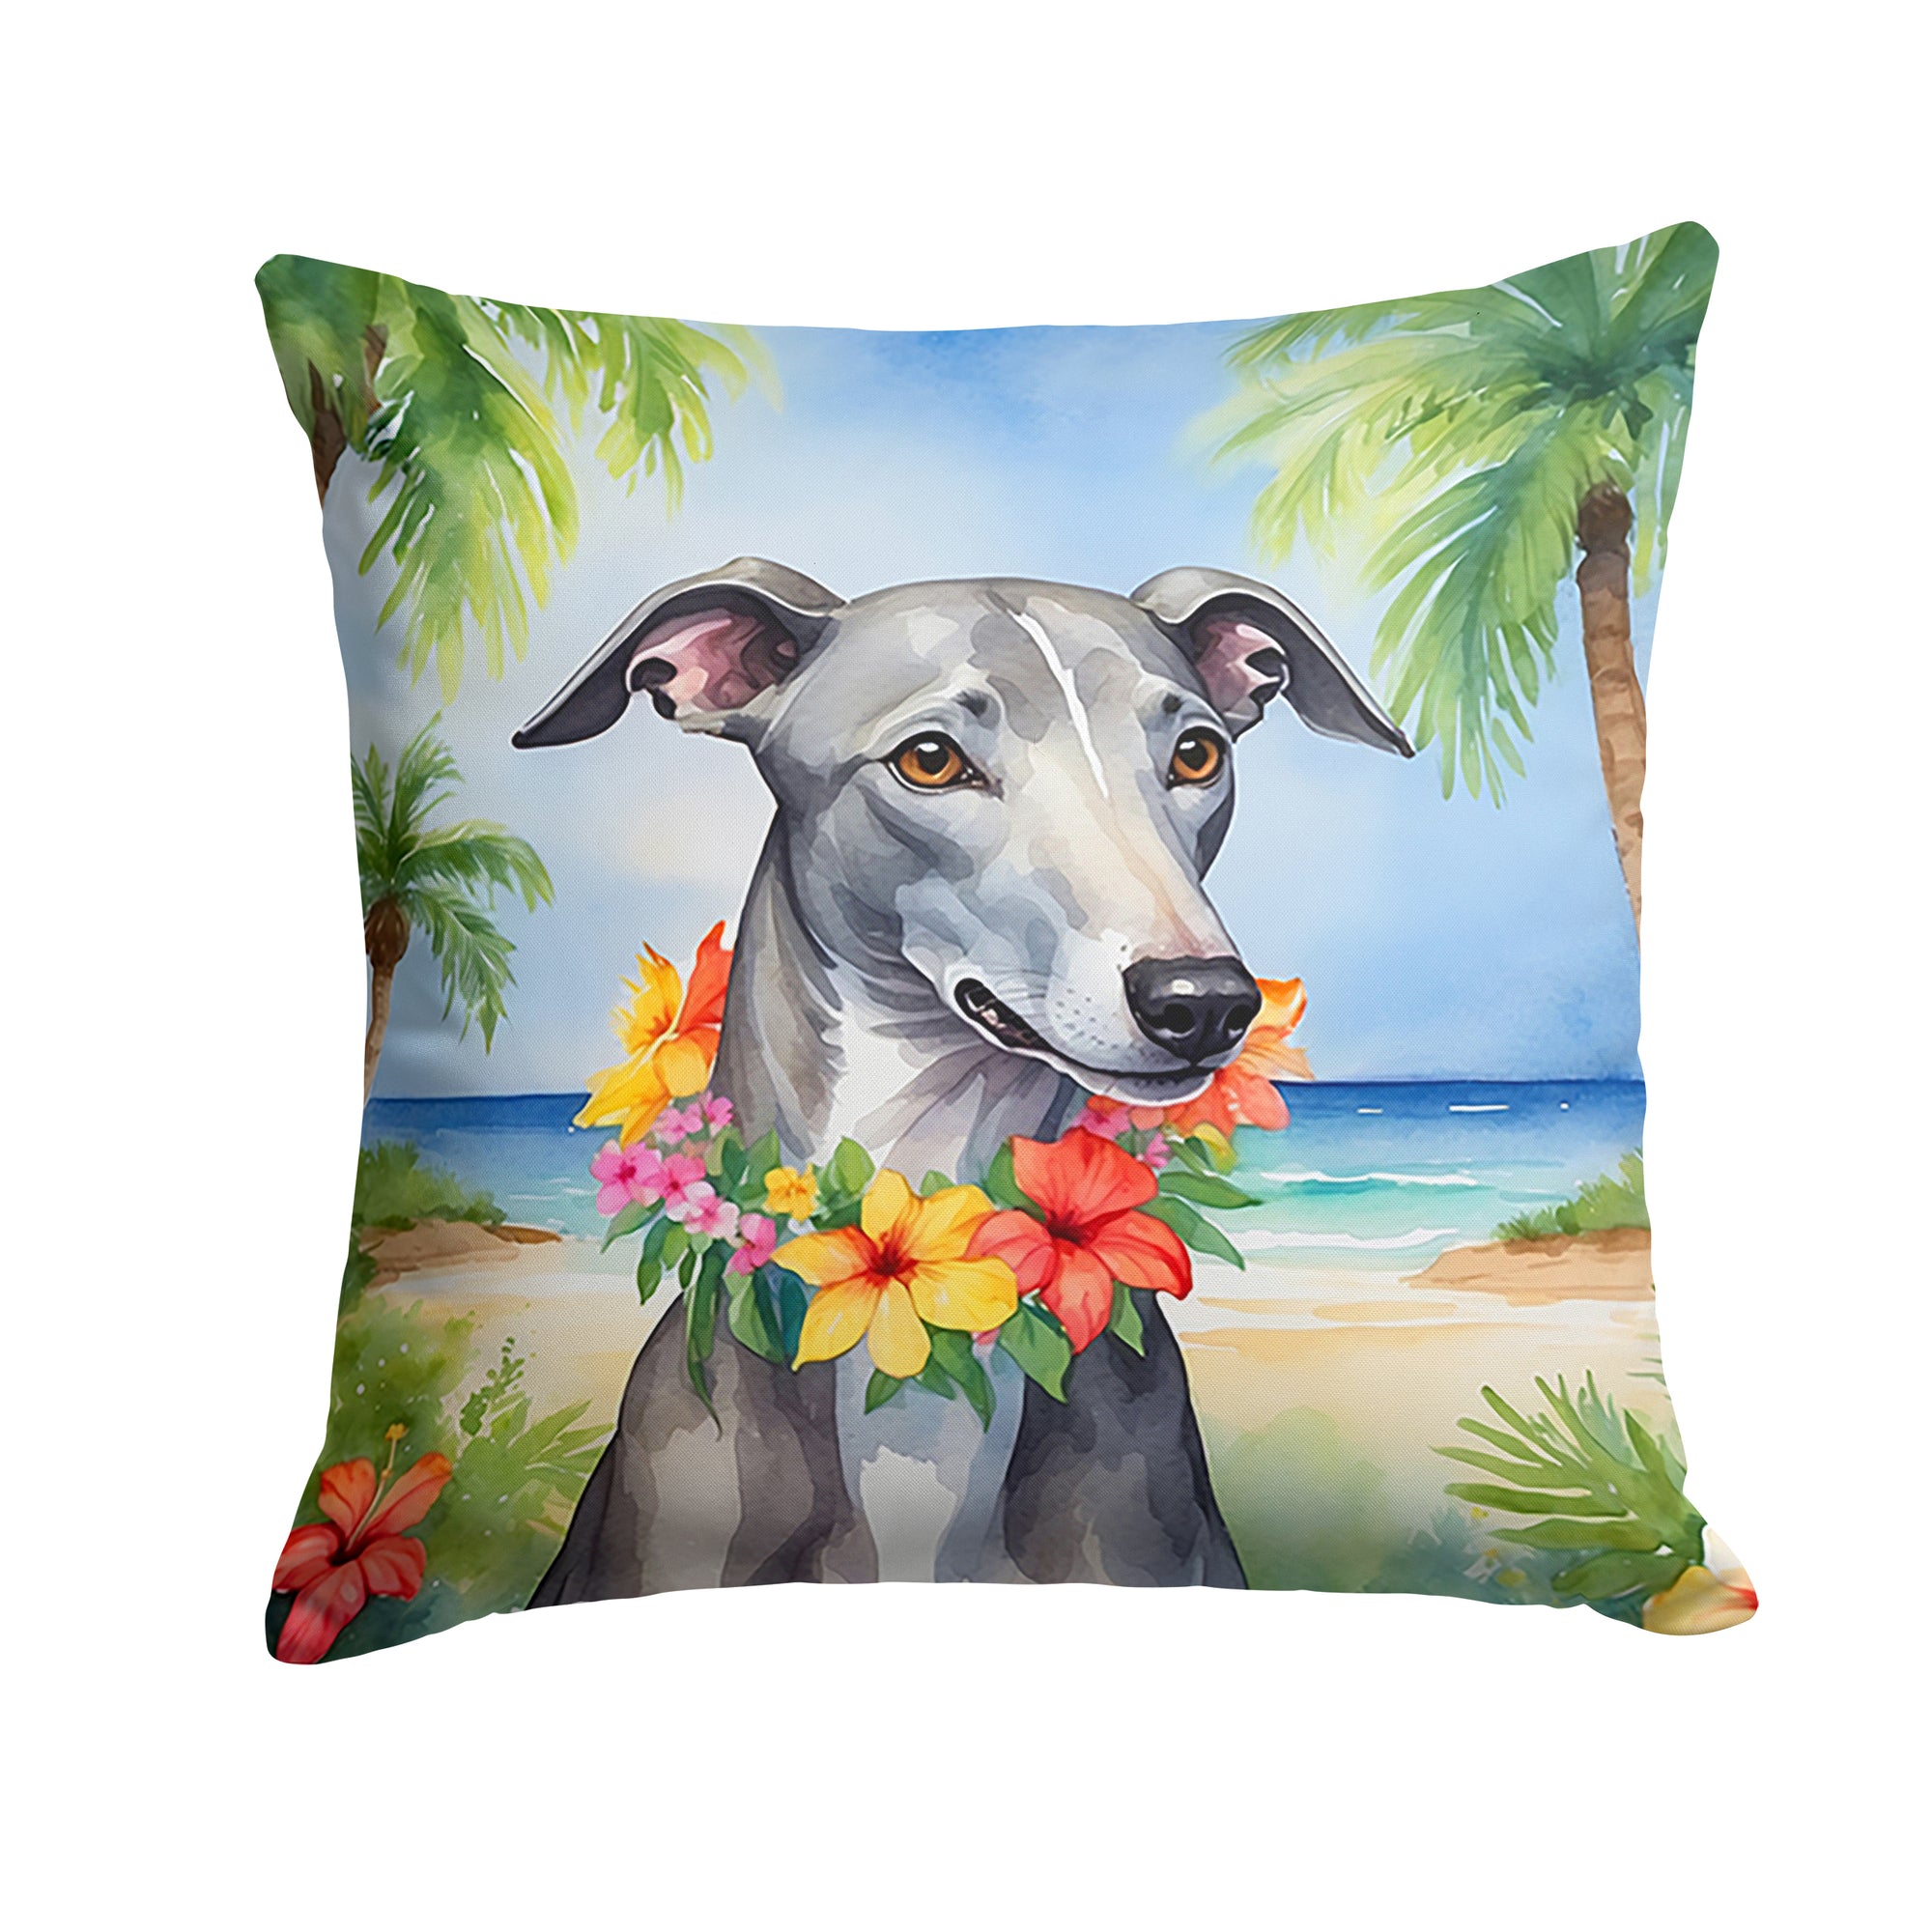 Buy this Greyhound Luau Throw Pillow